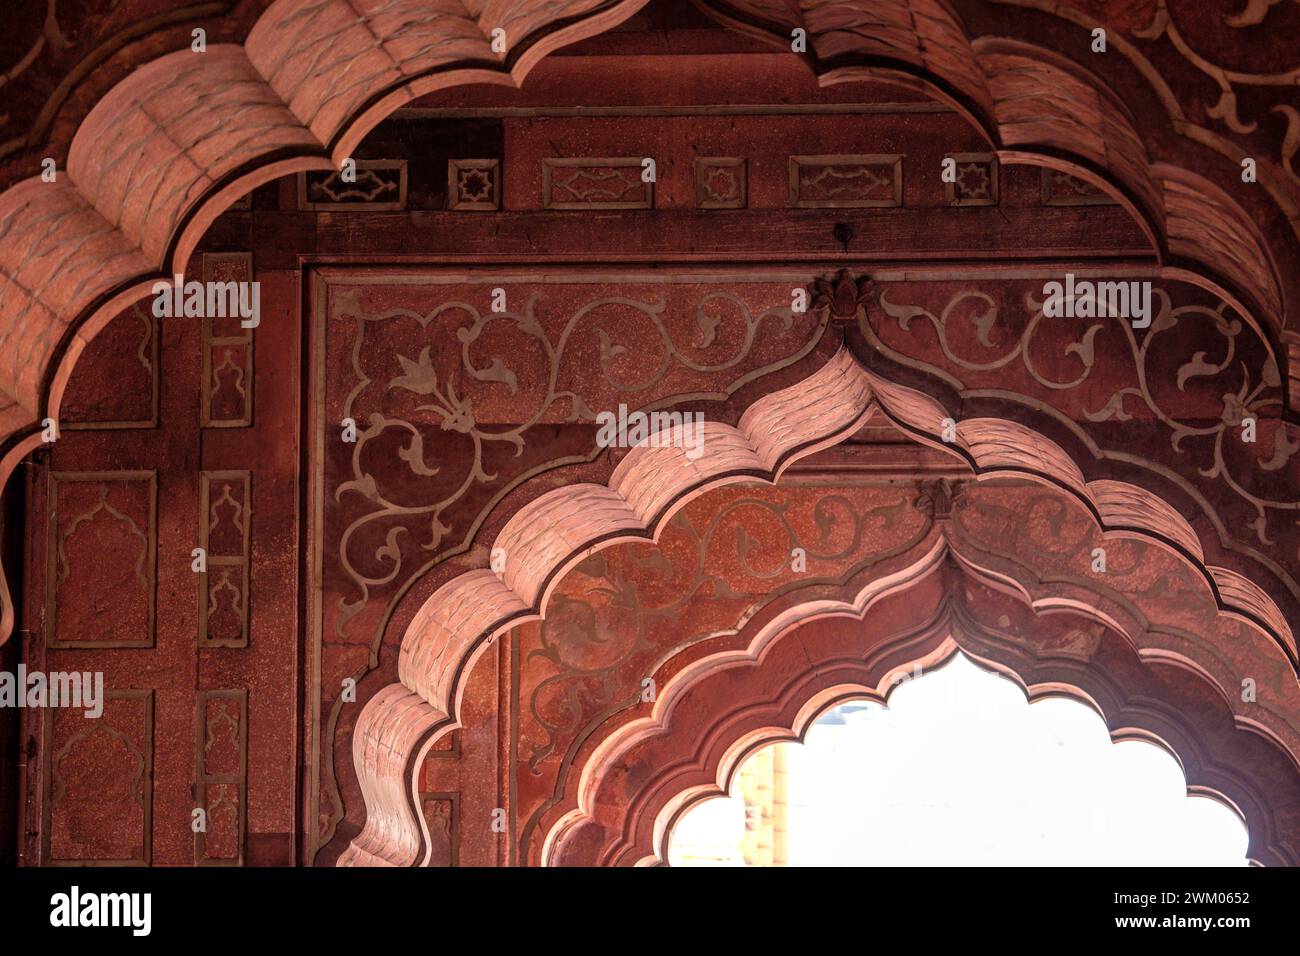 Islamische Architektur in der Jama Masjid Moschee in Delhi, der größten Moschee Indiens Stockfoto